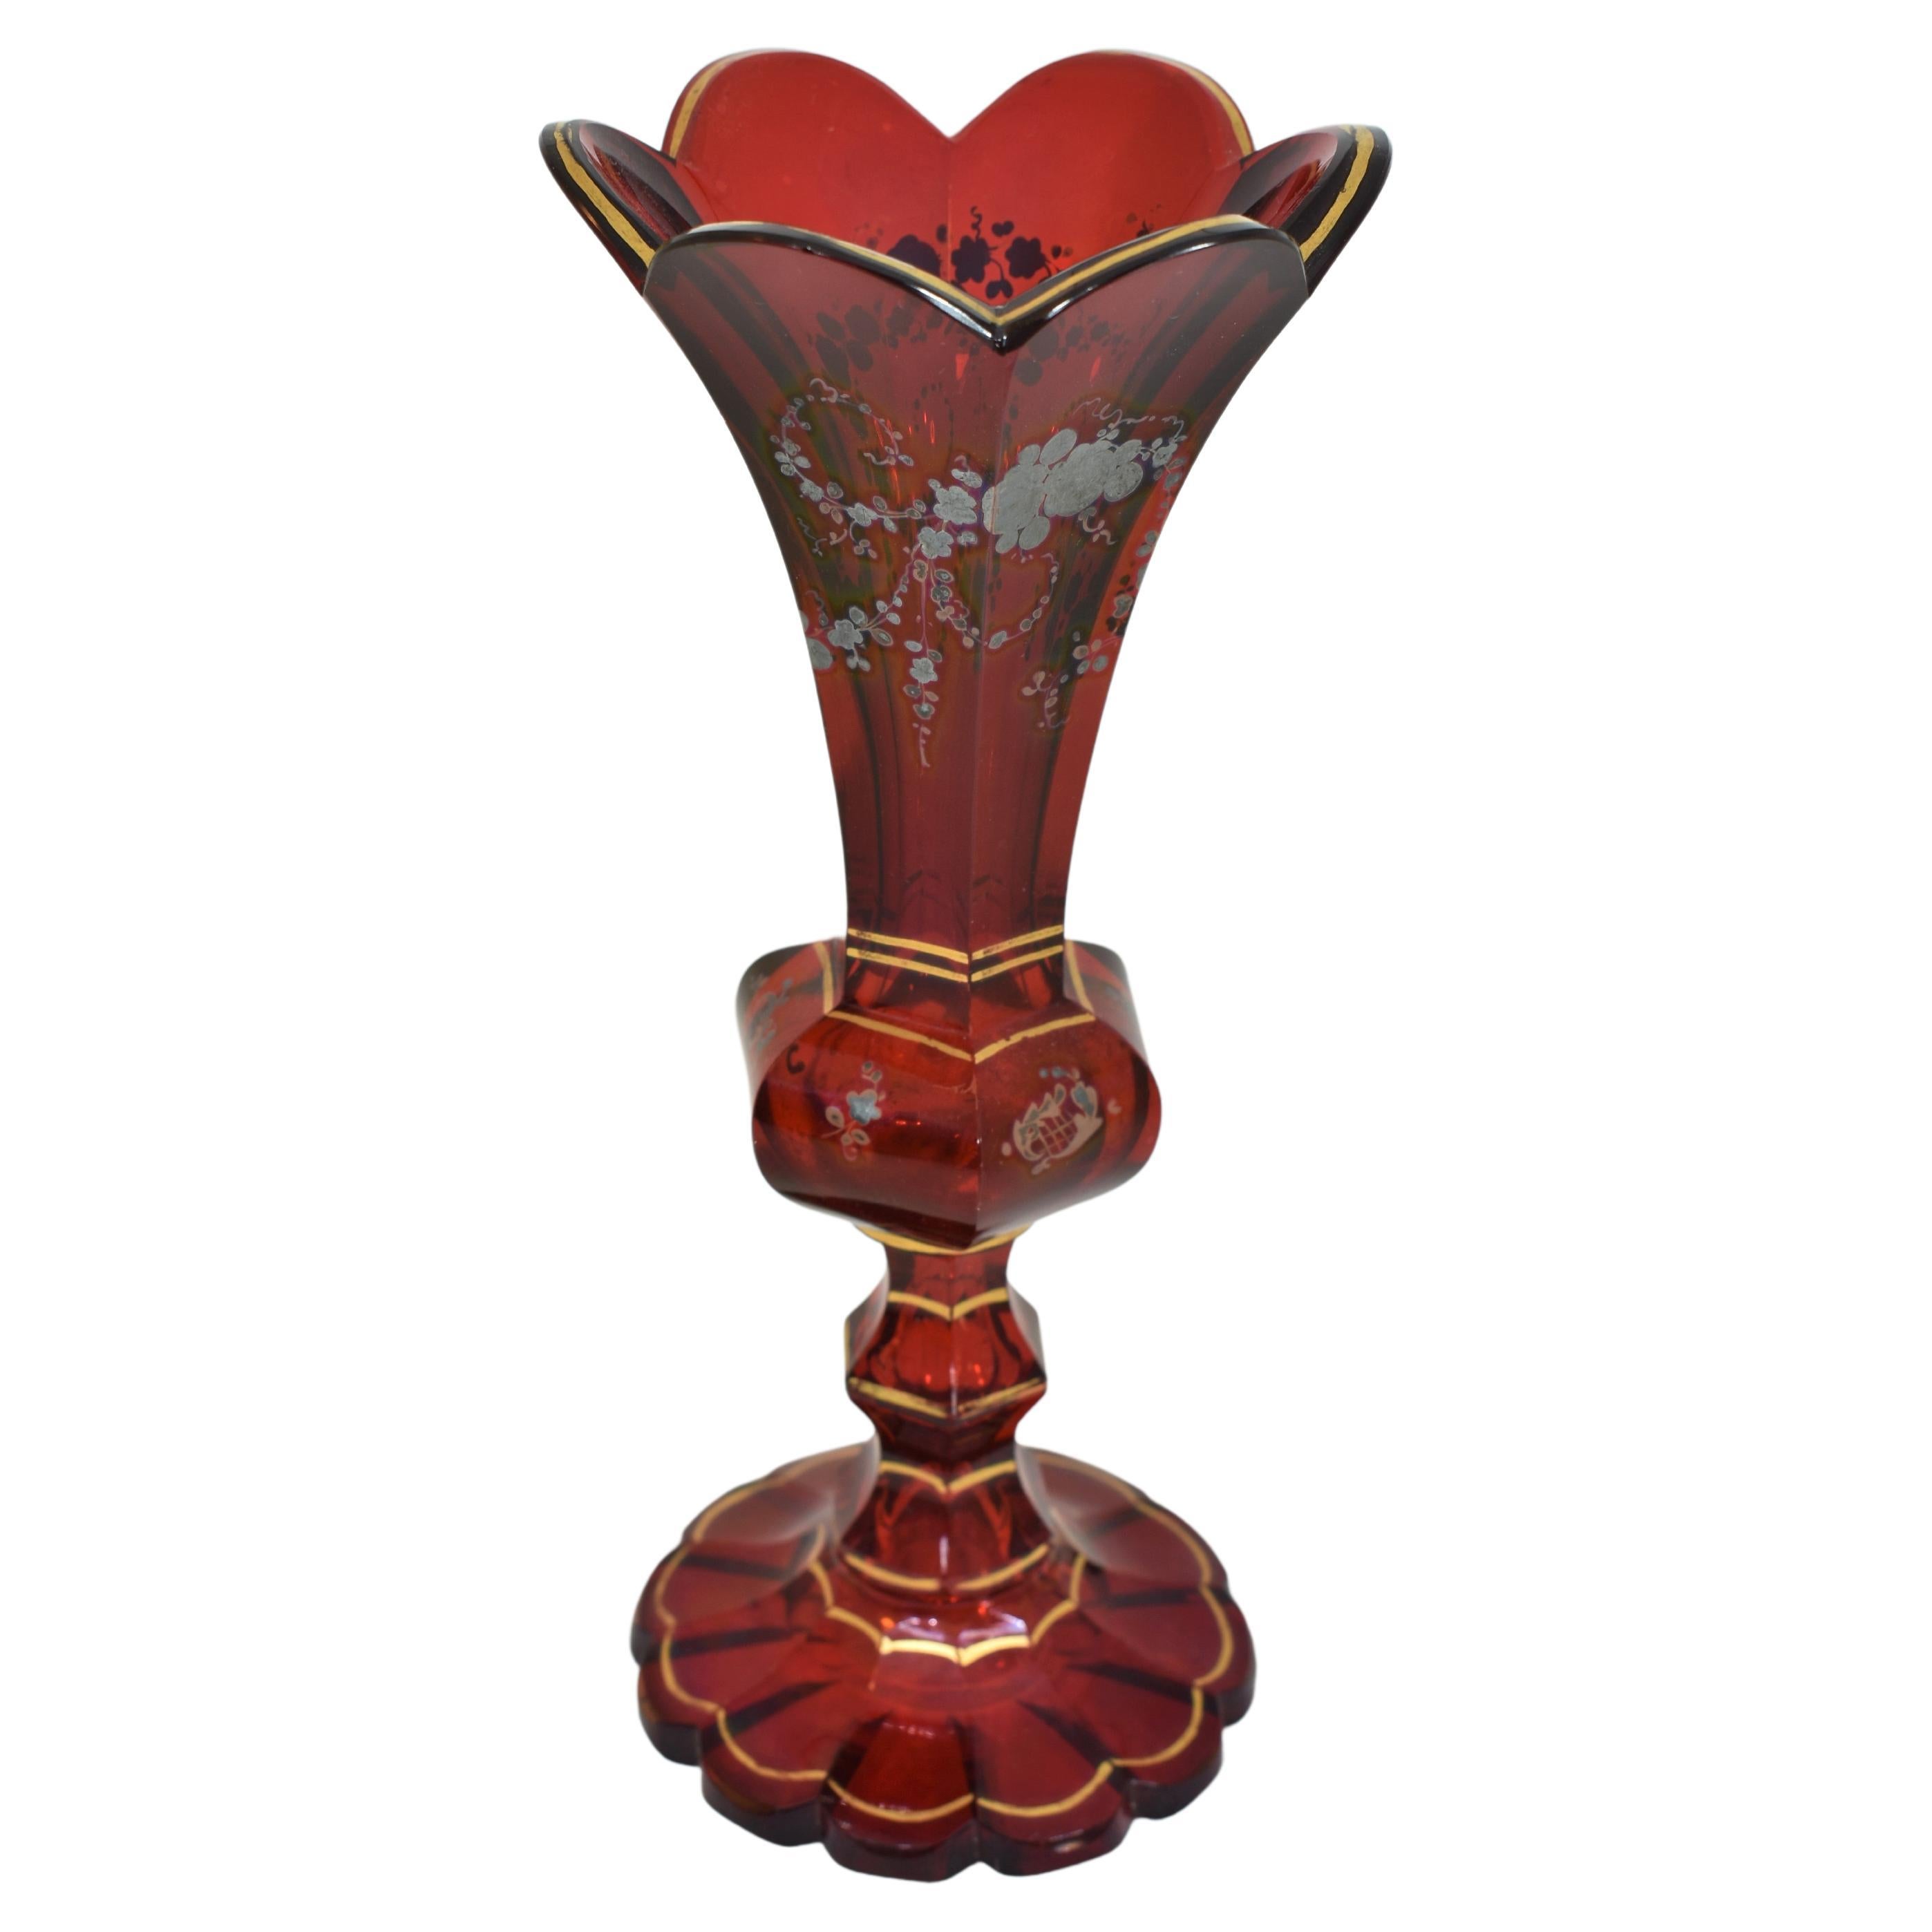 Elegant vase en verre rouge rubis abondamment décoré de dorure et d'émaillage argenté, avec un bord festonné et doré, reposant sur un pied festonné coupé d'un motif en étoile en dessous.
Bohemia, 19ème siècle
Il mesure 21 cm de haut.